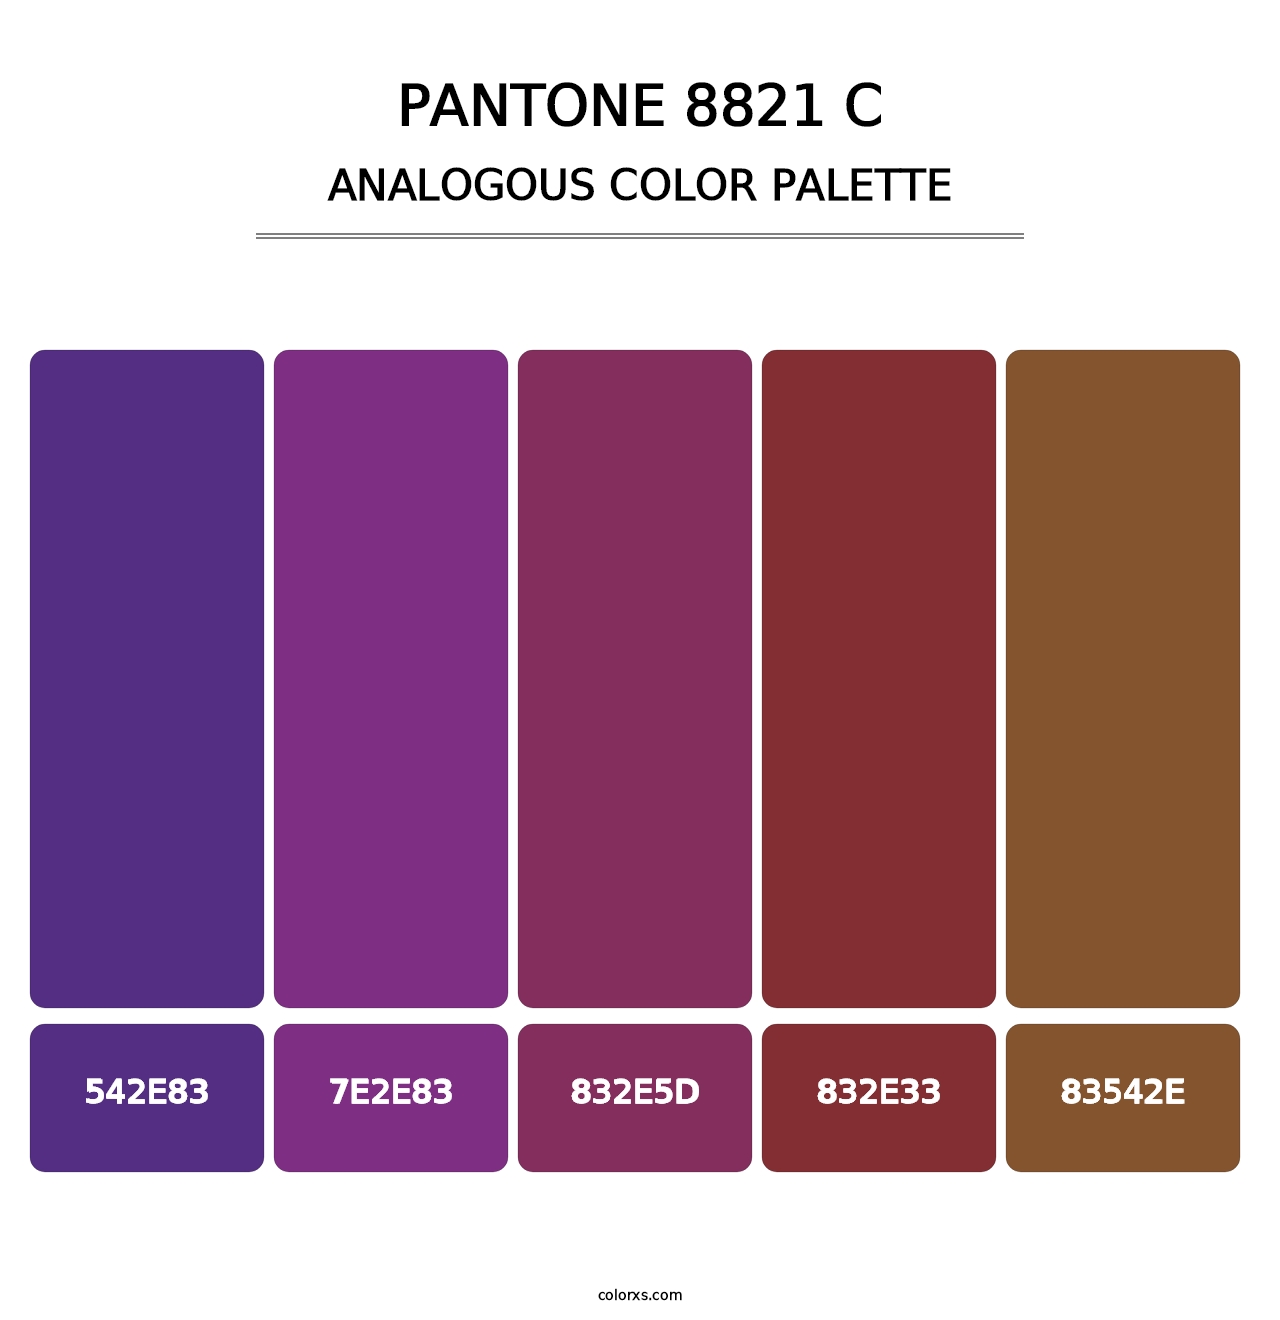 PANTONE 8821 C - Analogous Color Palette